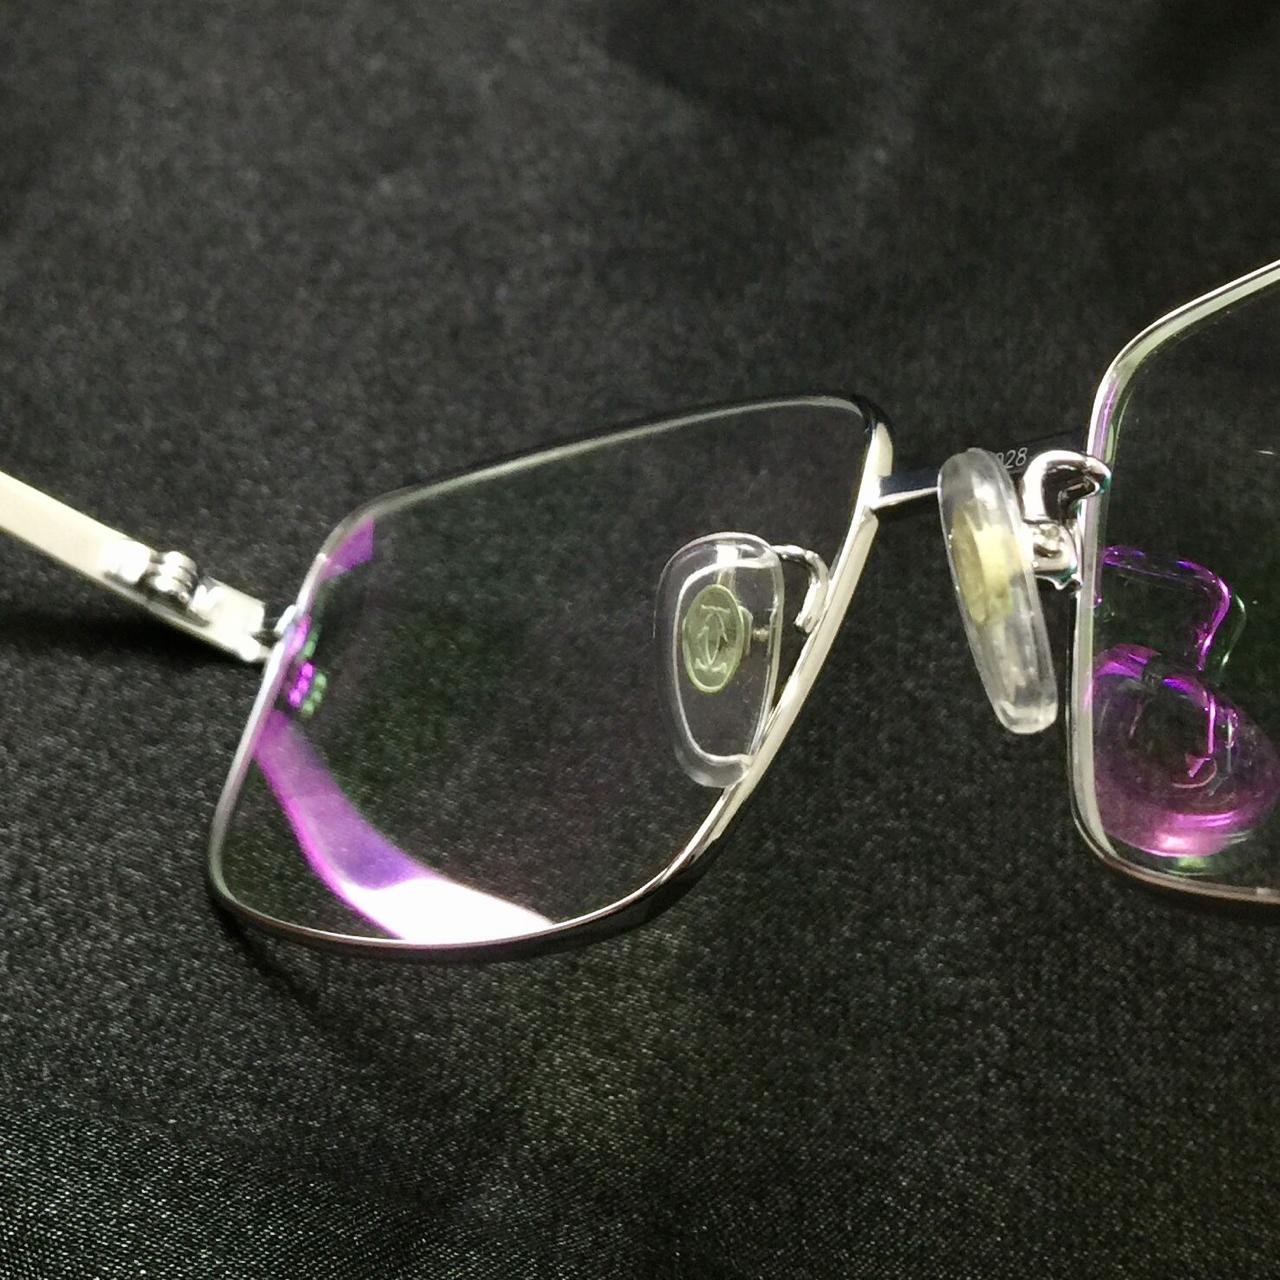 23KGB نظارة مستطيلة الشكل من كارتييه